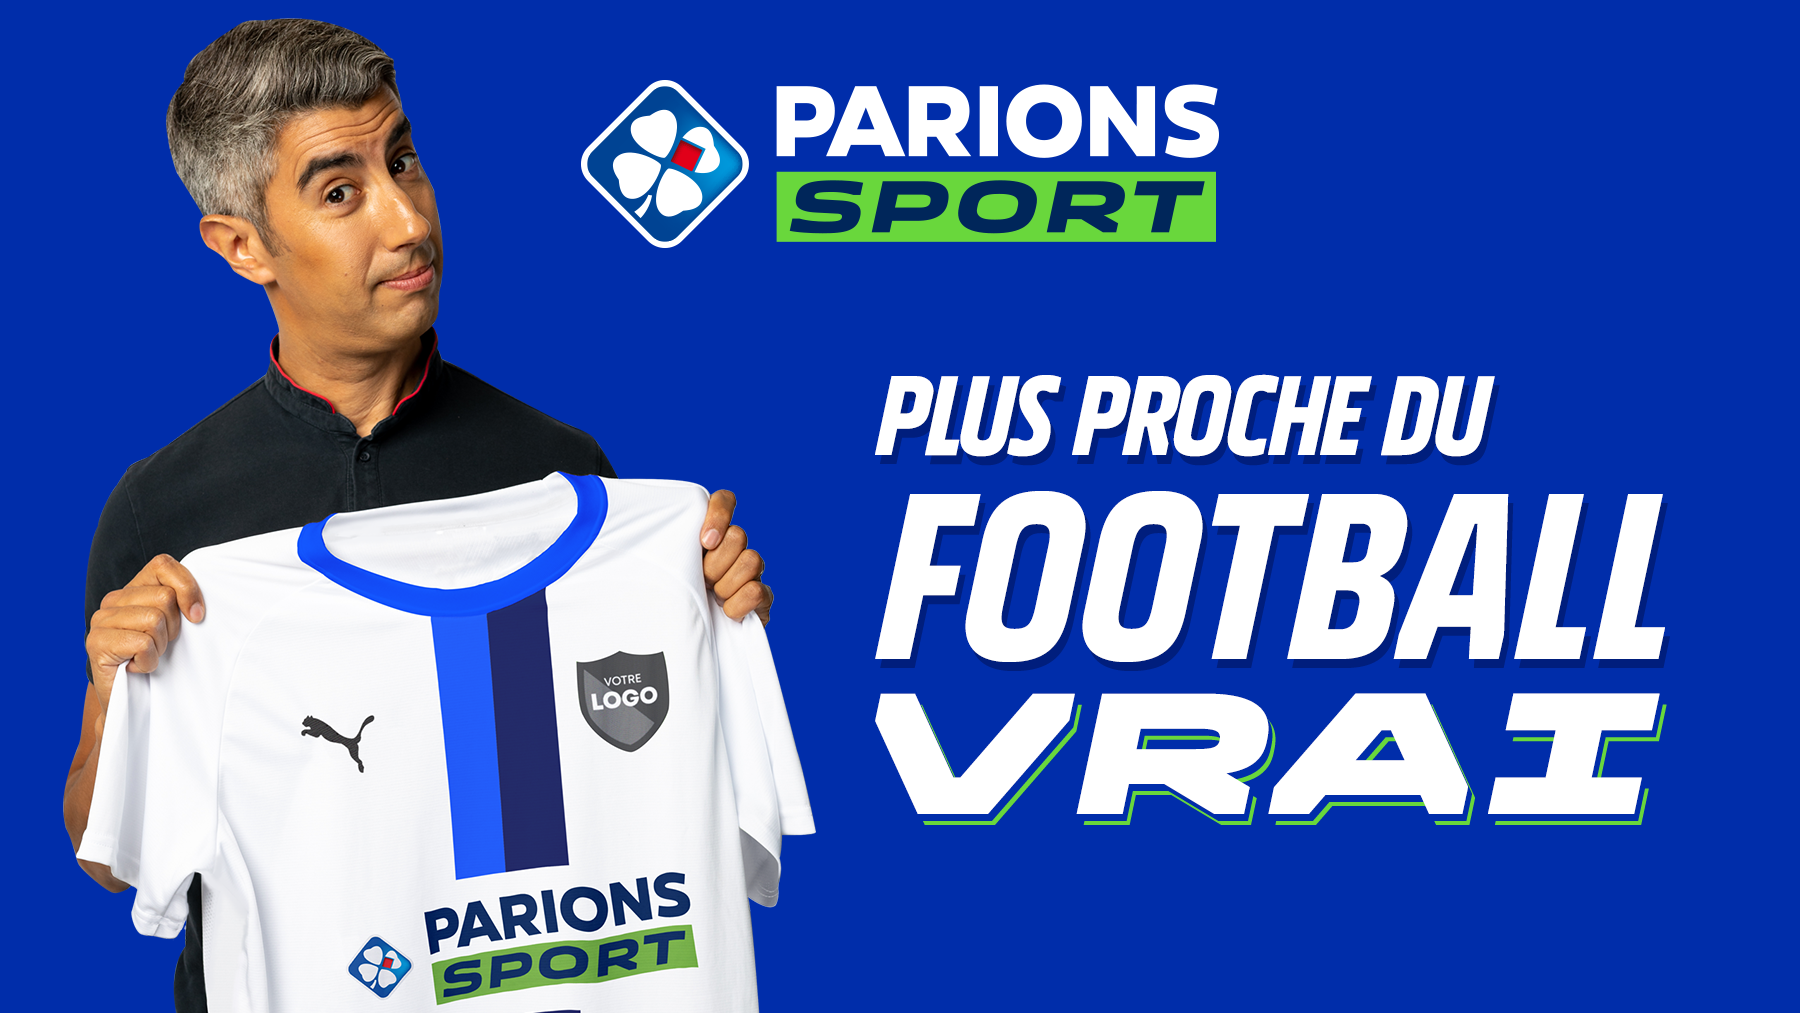 PARIONS SPORT soutient le football amateur, saison 2